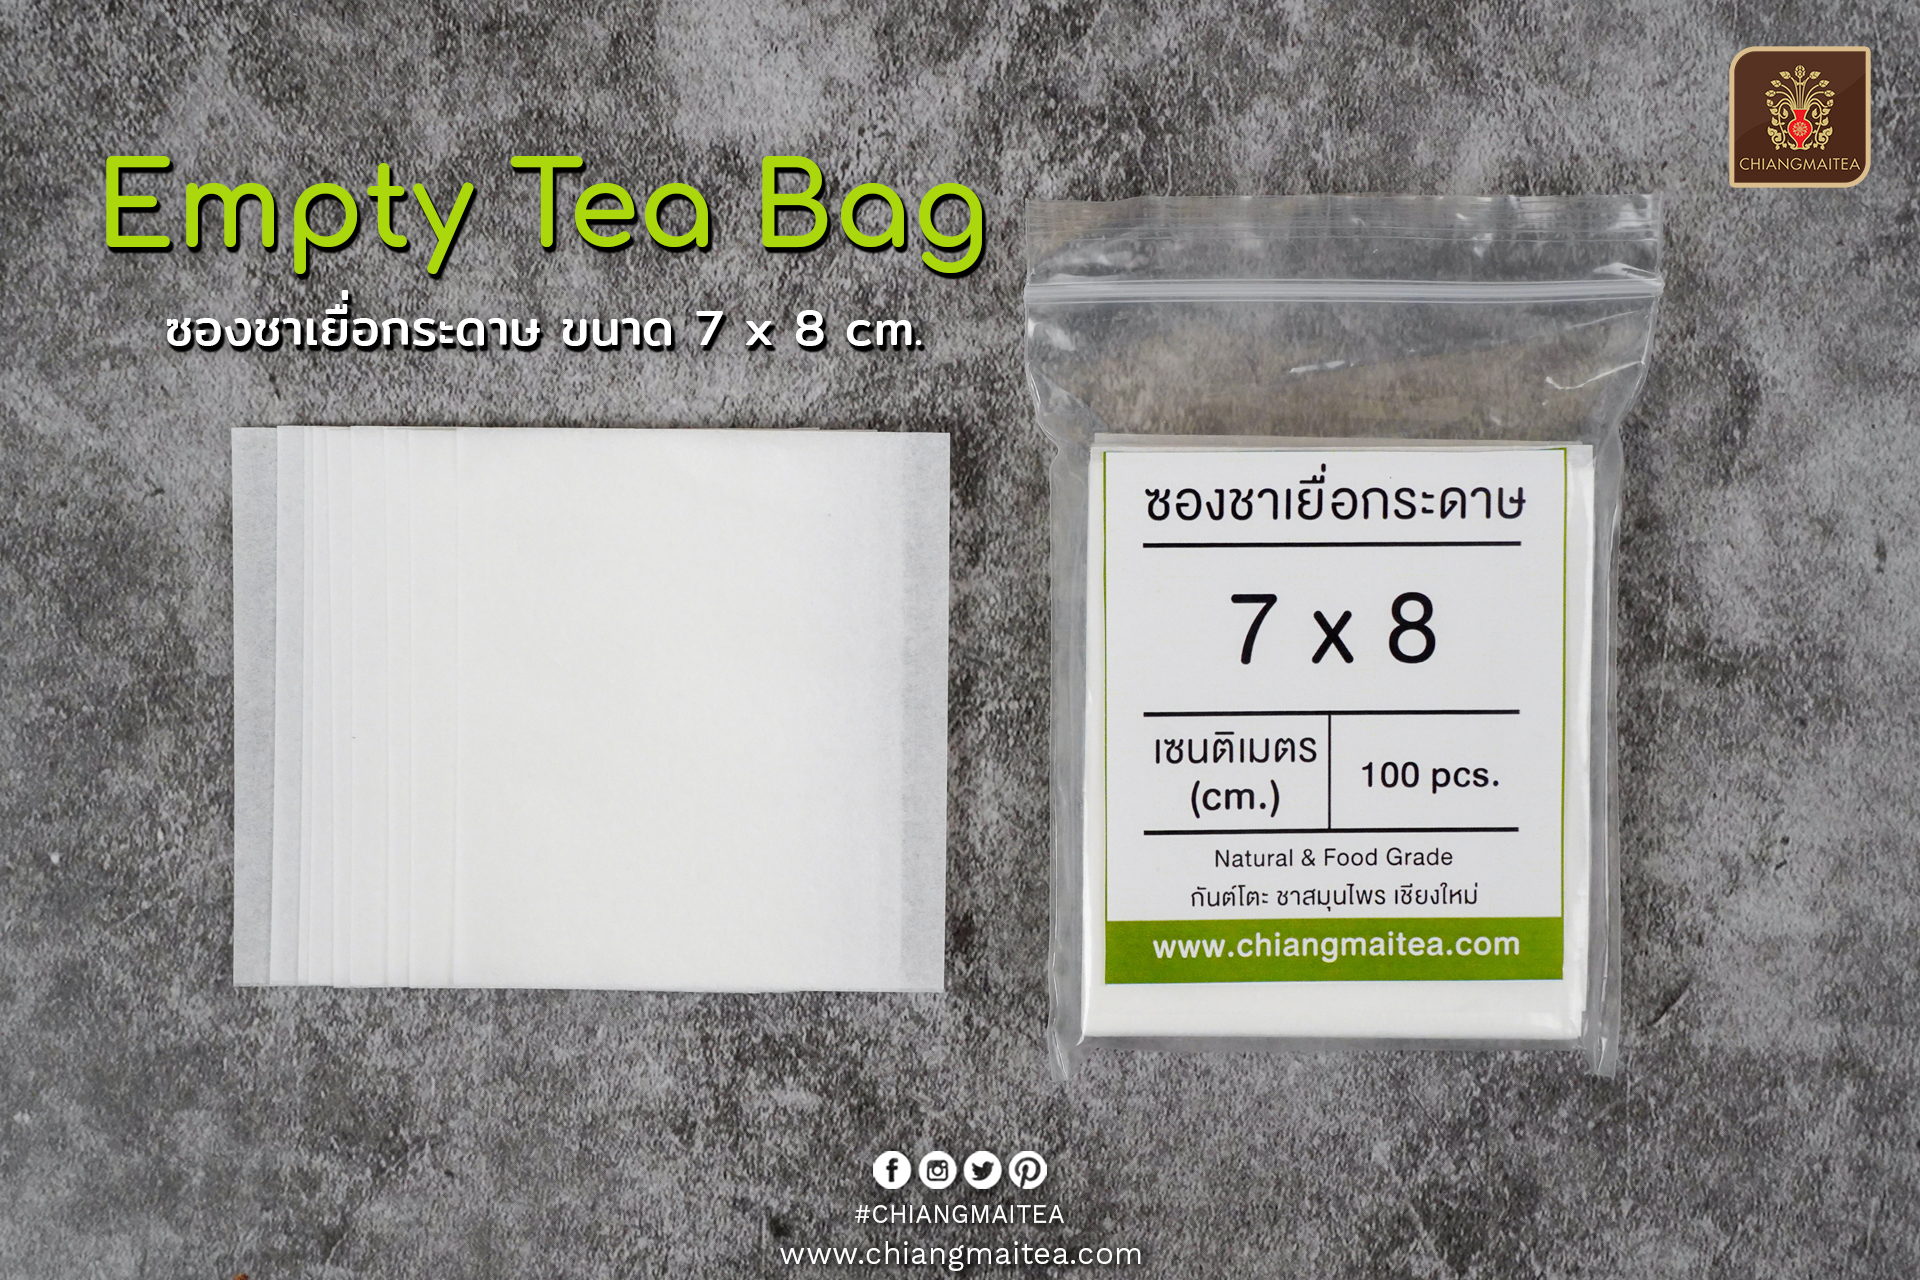 ซองชาเยื่อกระดาษ (Empty TeaBag) ขนาด 7x8 cm.